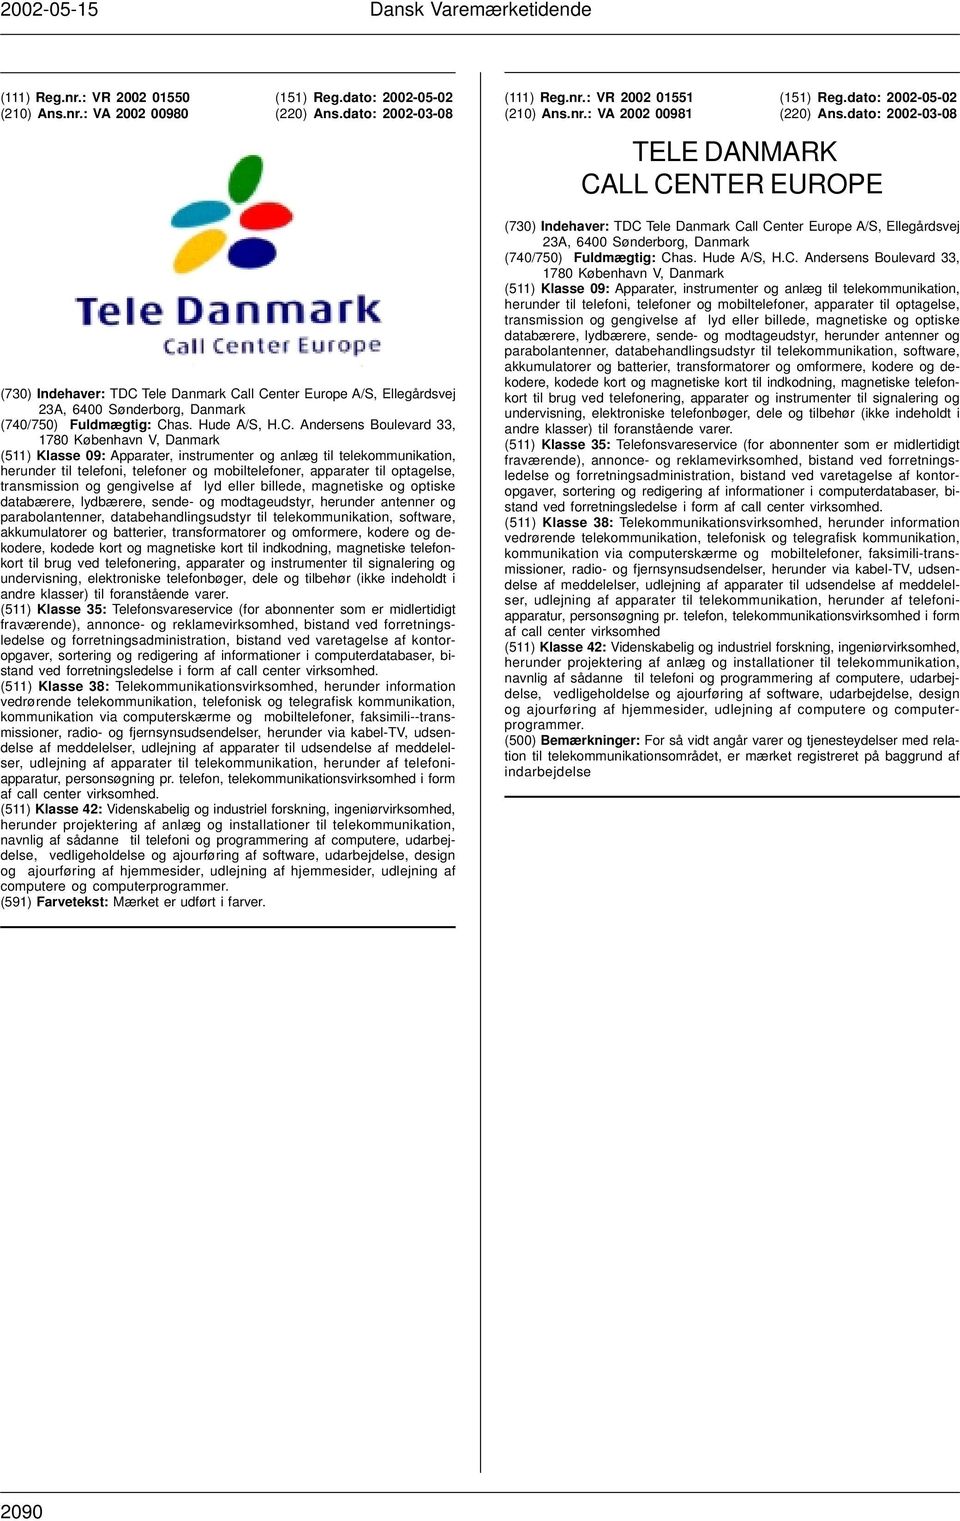 Tele Danmark Ca